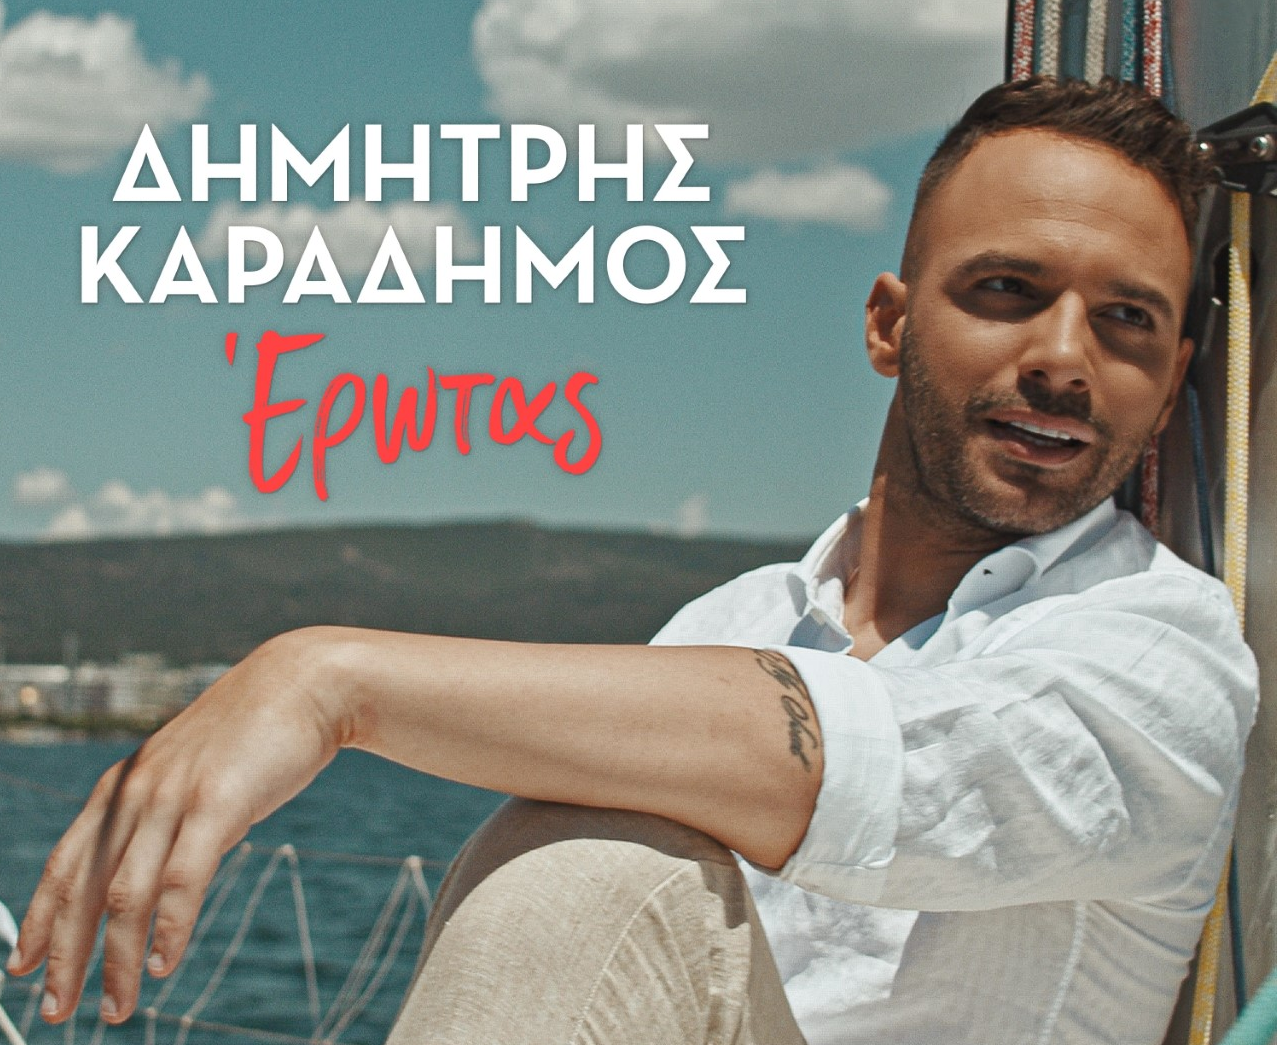 «Έρωτας»: Ο Δημήτρης Καραδήμος κυκλοφορεί νέο τραγούδι και video clip!